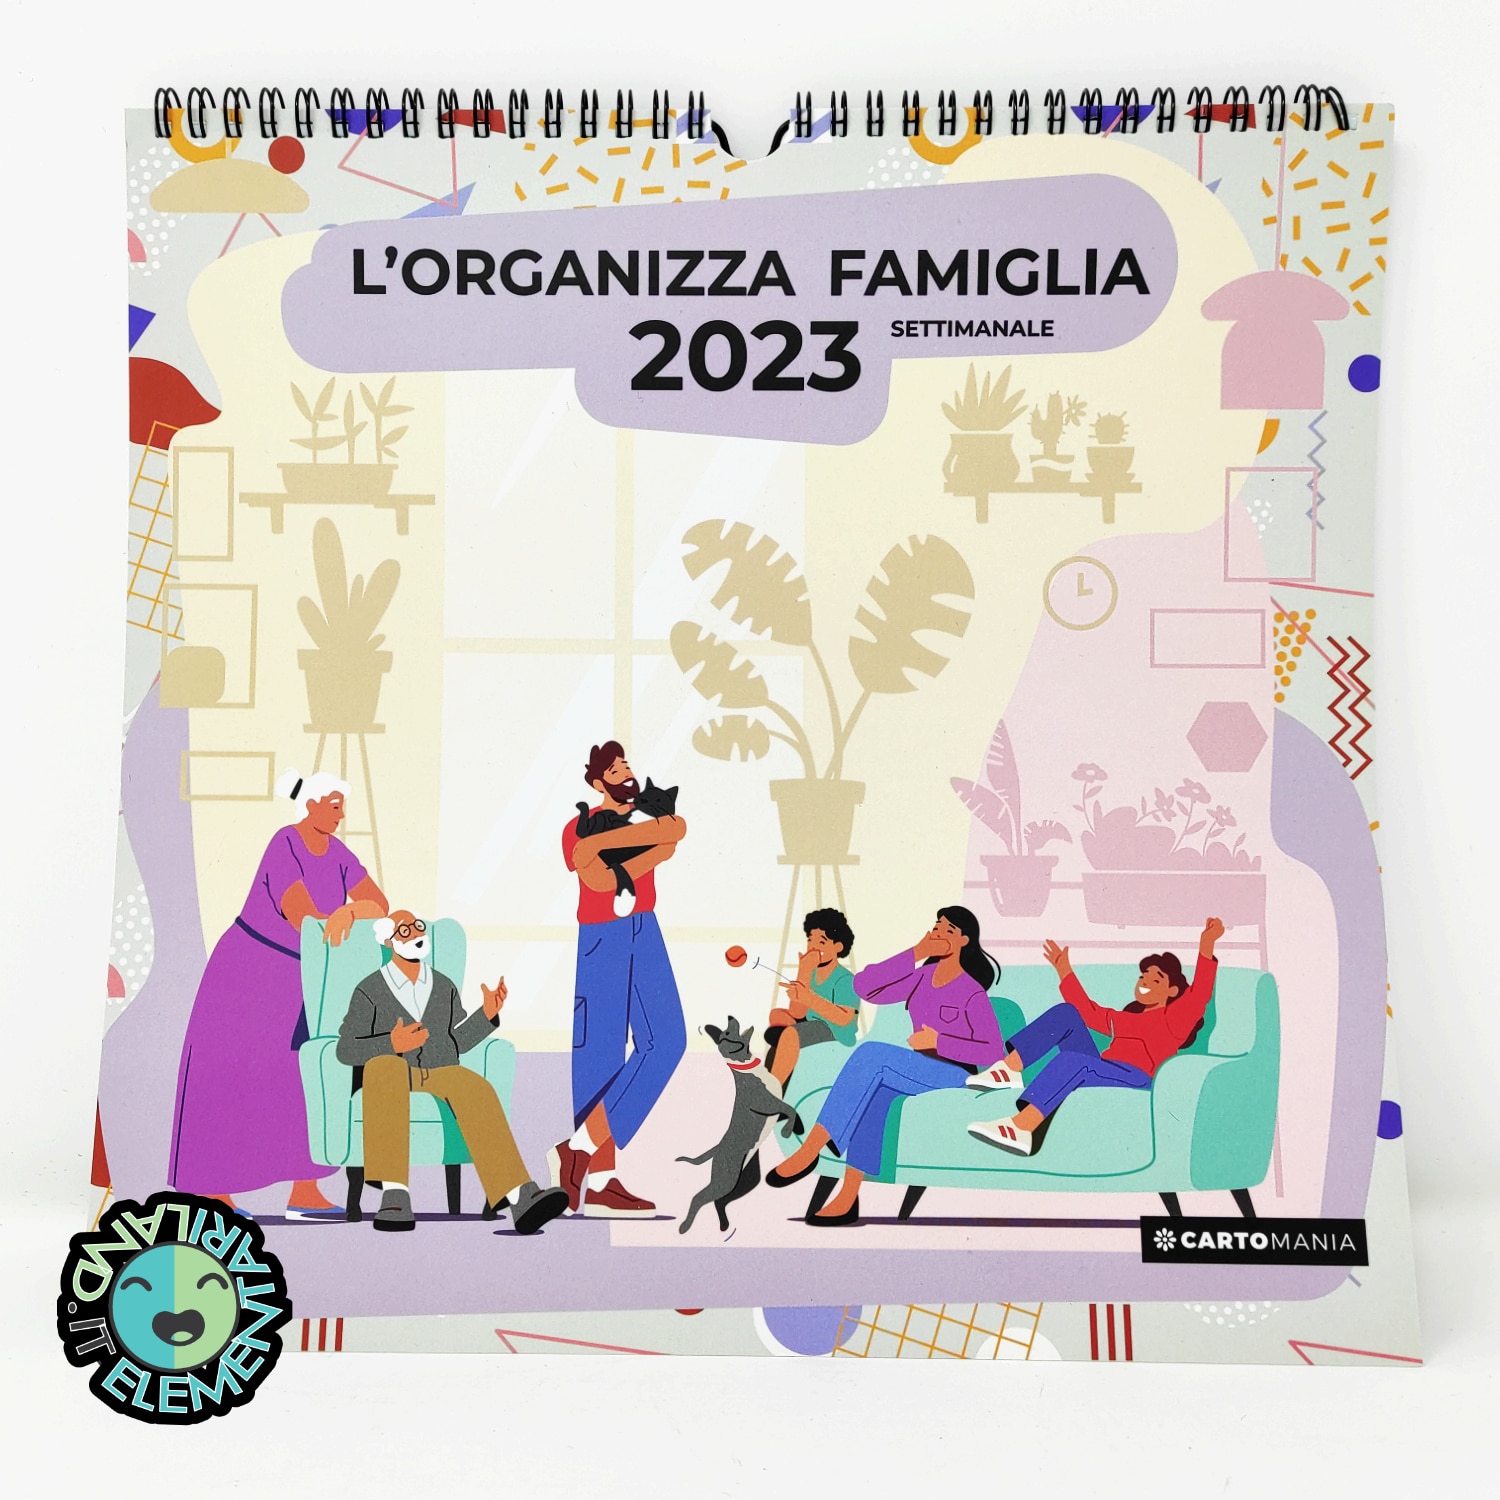 Featured image for “Calendario ORGANIZZA FAMIGLIA 2023 - Settimanale -”